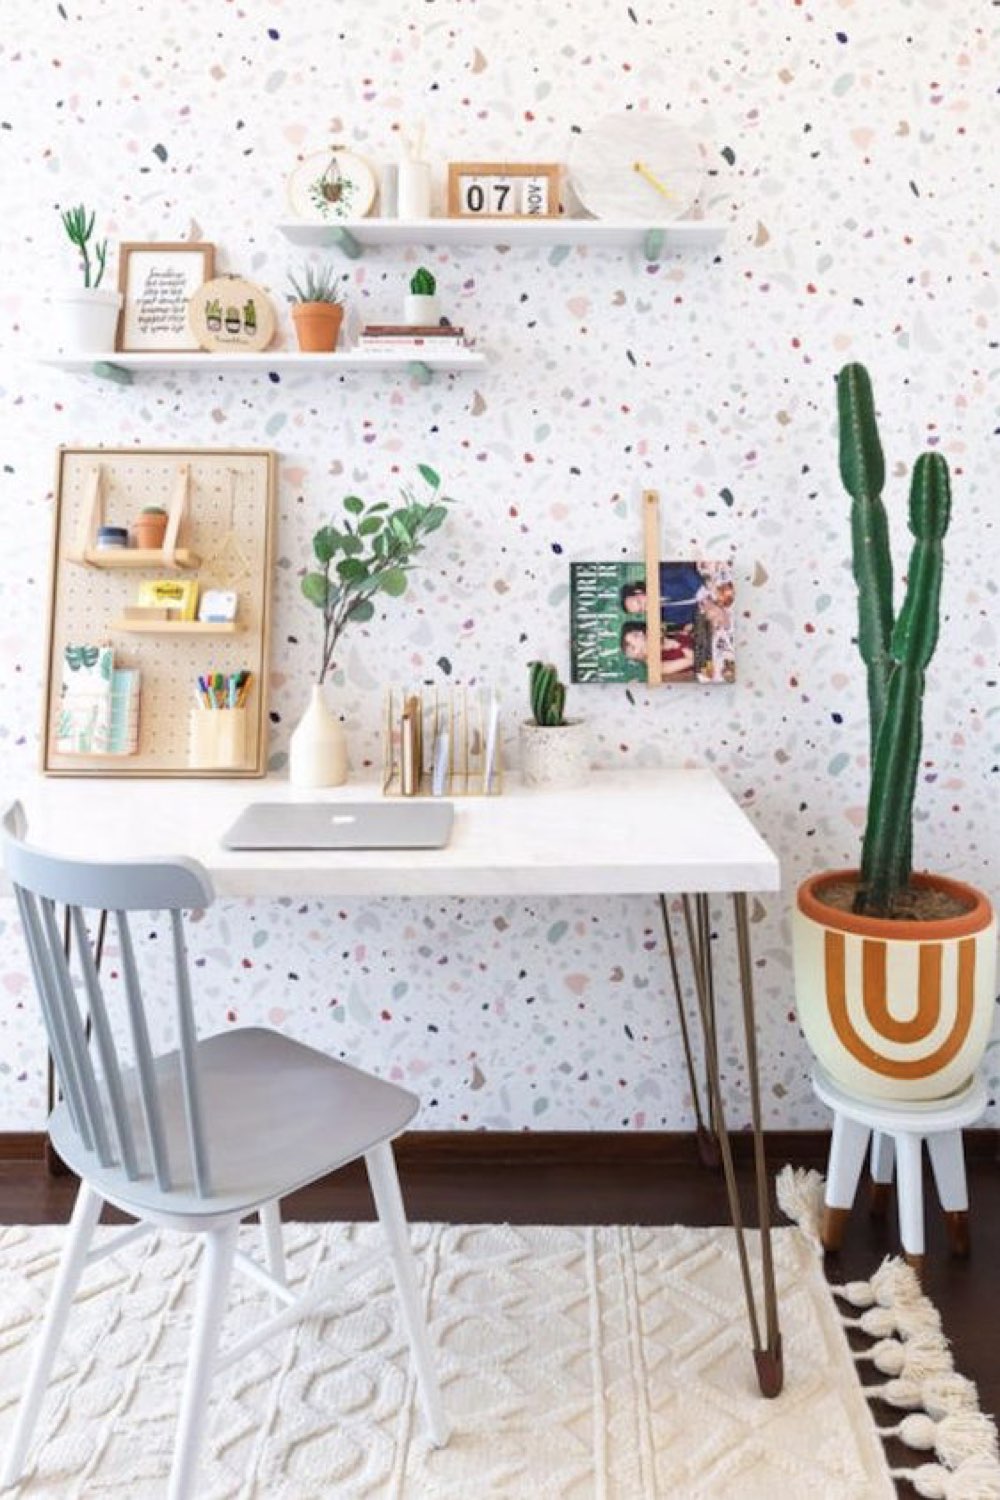 decor bureau reussi exemple papier peint terrazzo fond blanc petit espace de travail chaise vintage scandinave peinte en bleu cactus ambiance moderne et lumineuse